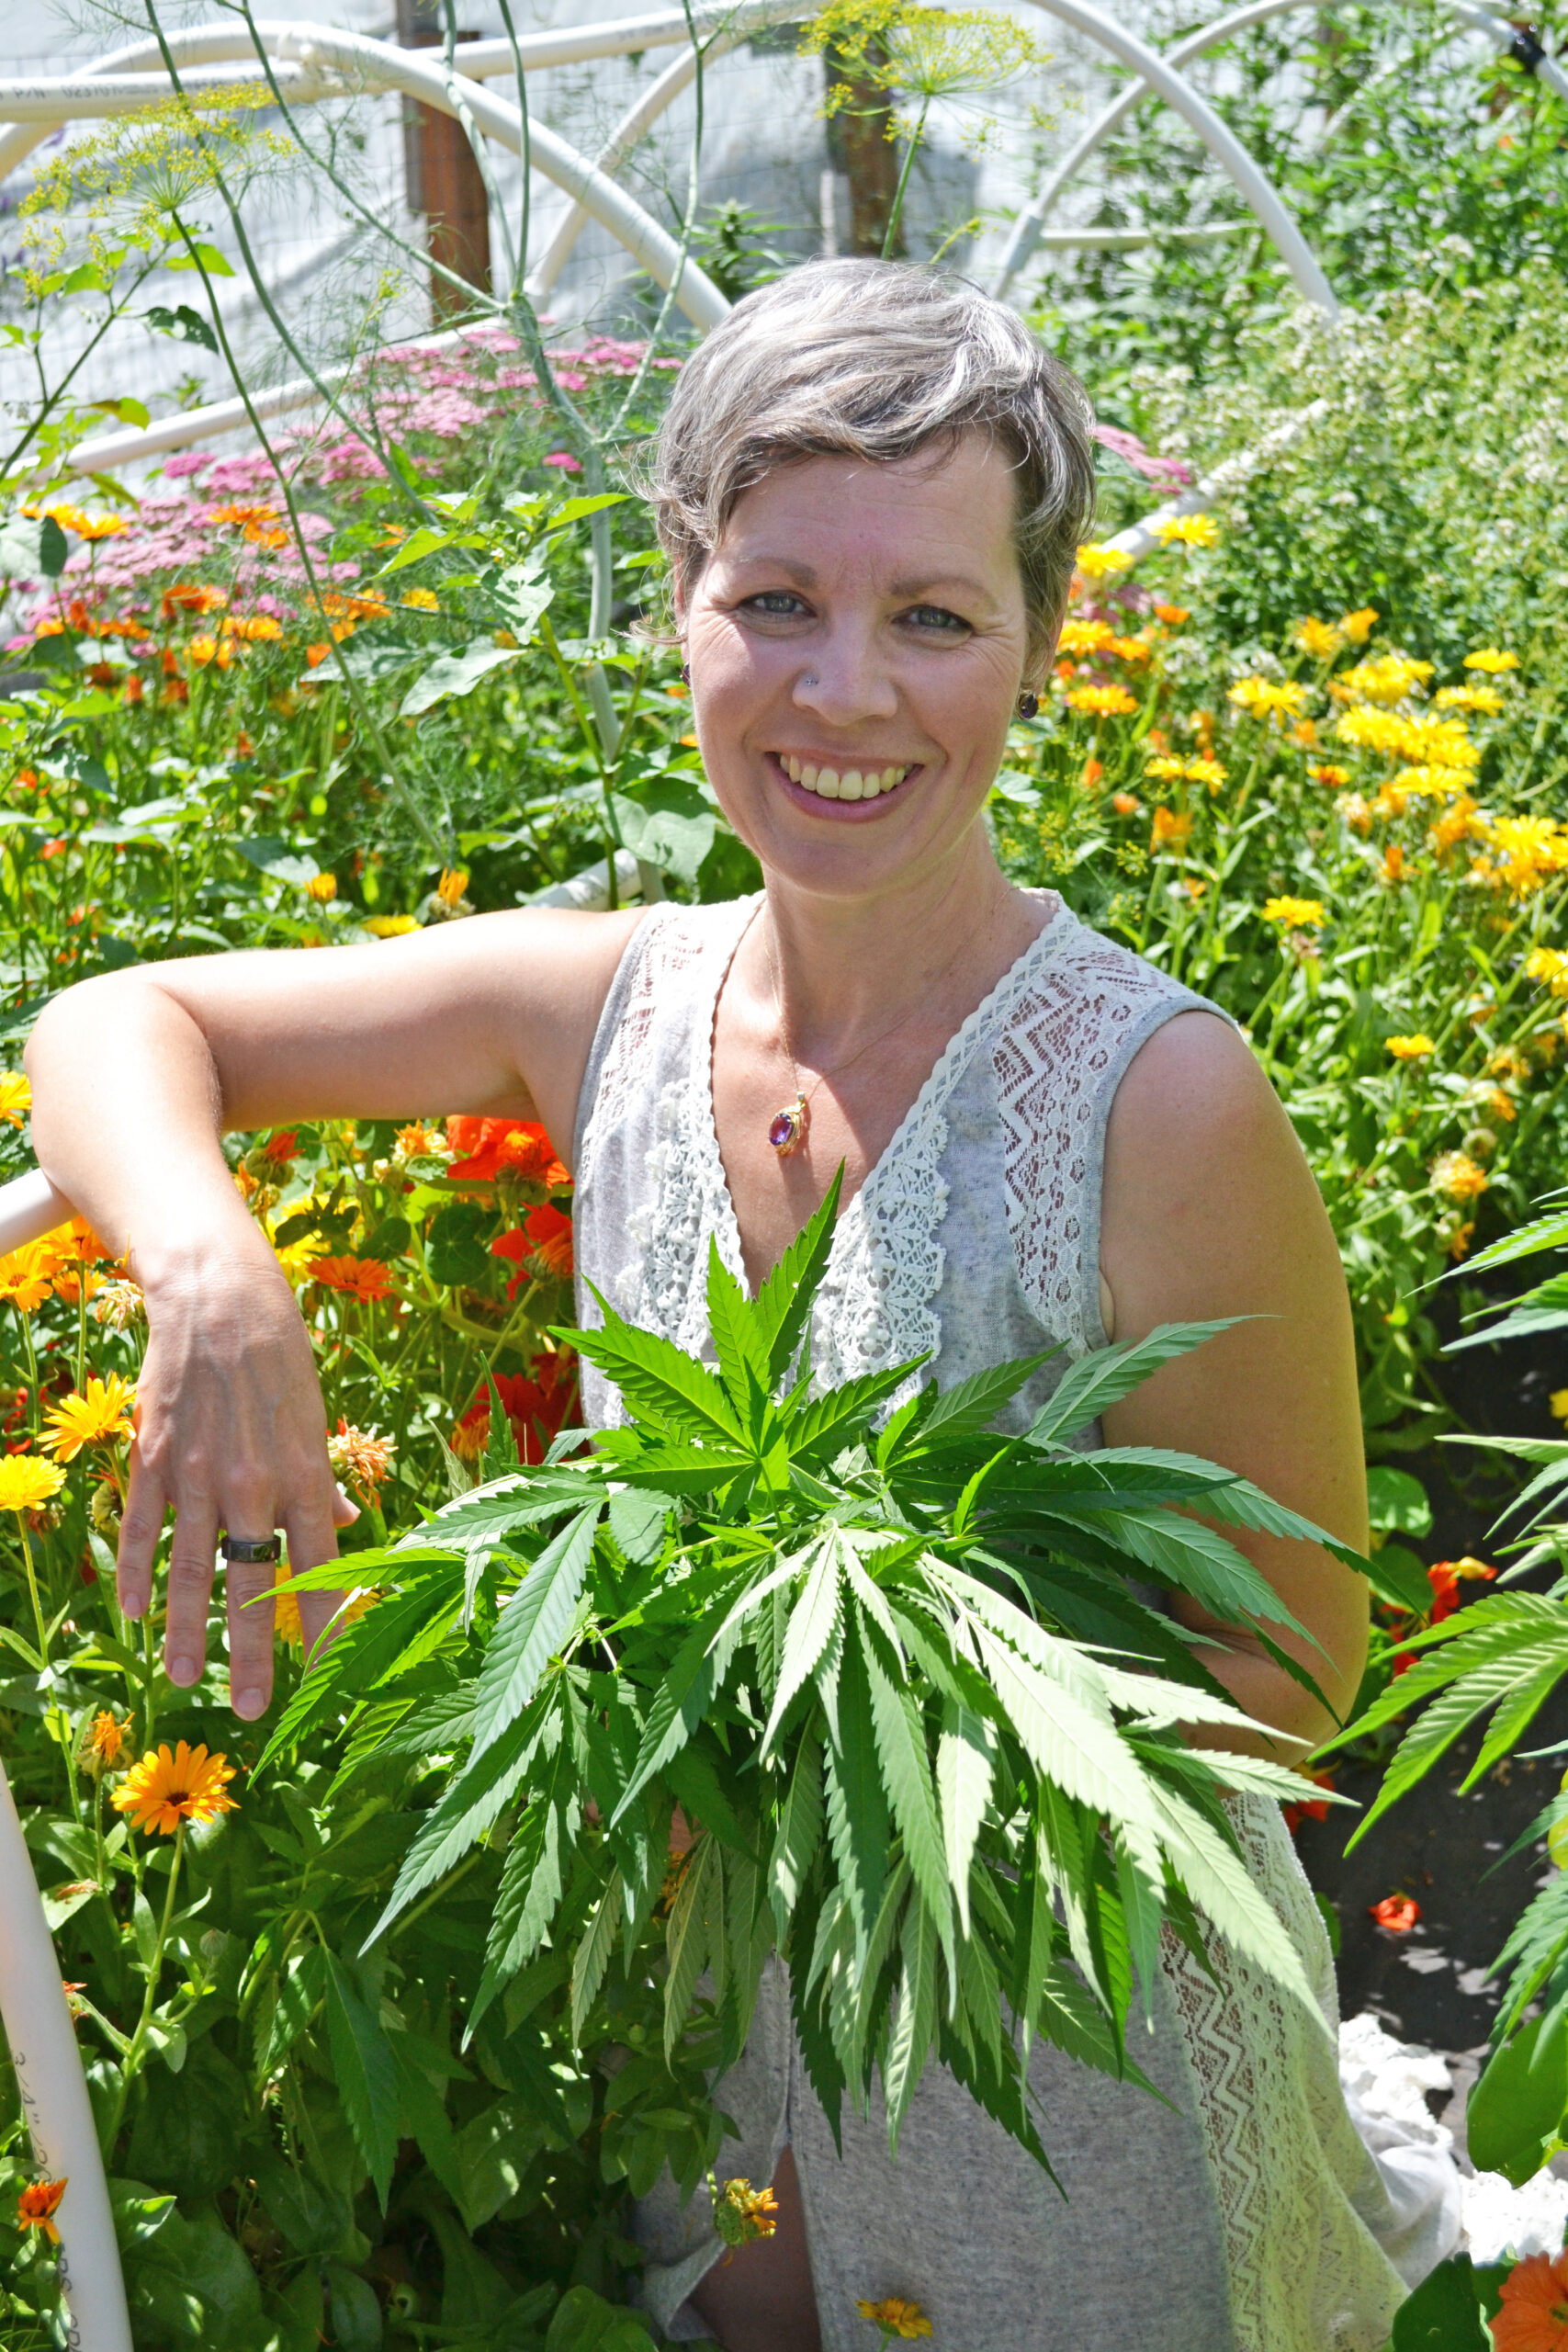 cannabis coach in the cannabis garden holding cannabis plants